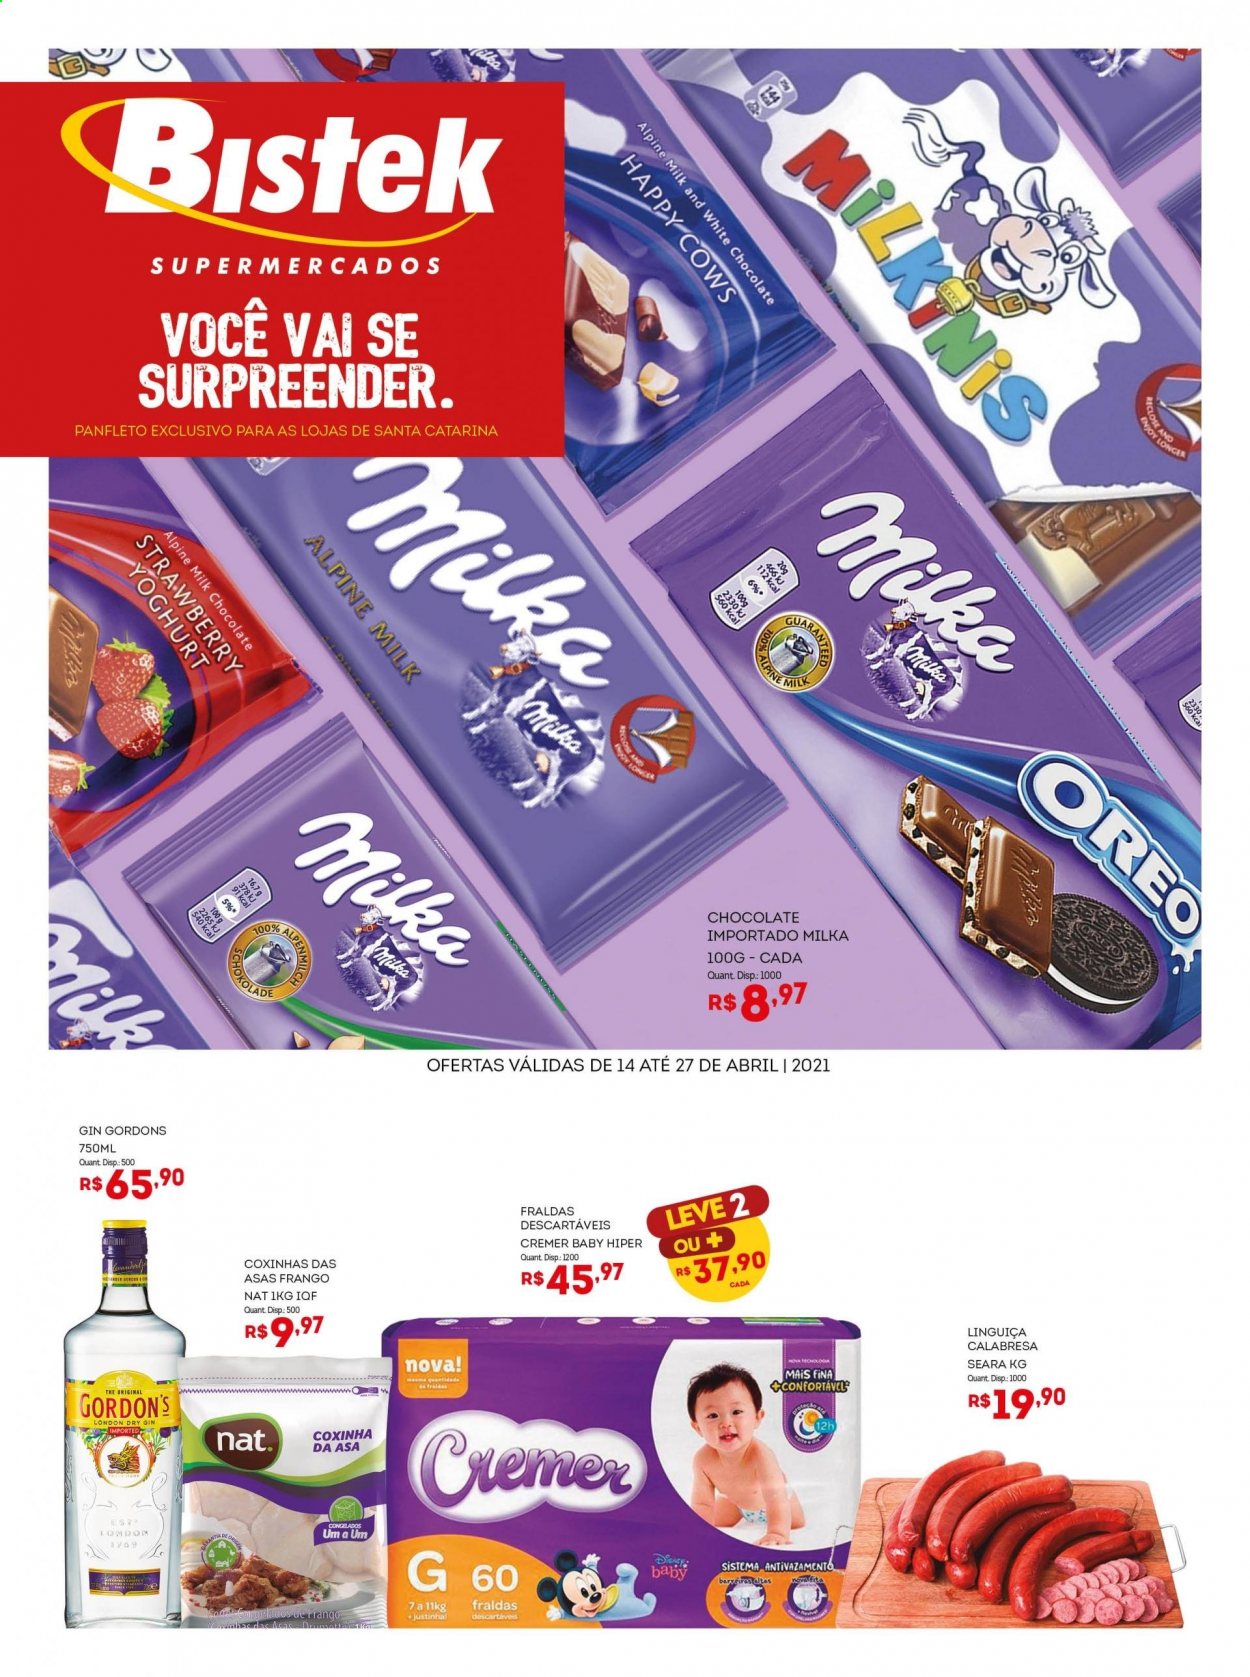 thumbnail - Folheto Bistek Supermercados - 14/04/2021 - 27/04/2021 - Produtos em promoção - asa de frango, linguiça, linguiça calabresa, Milka, Oreo, chocolate, gin, fralda descartável, fraldas. Página 1.